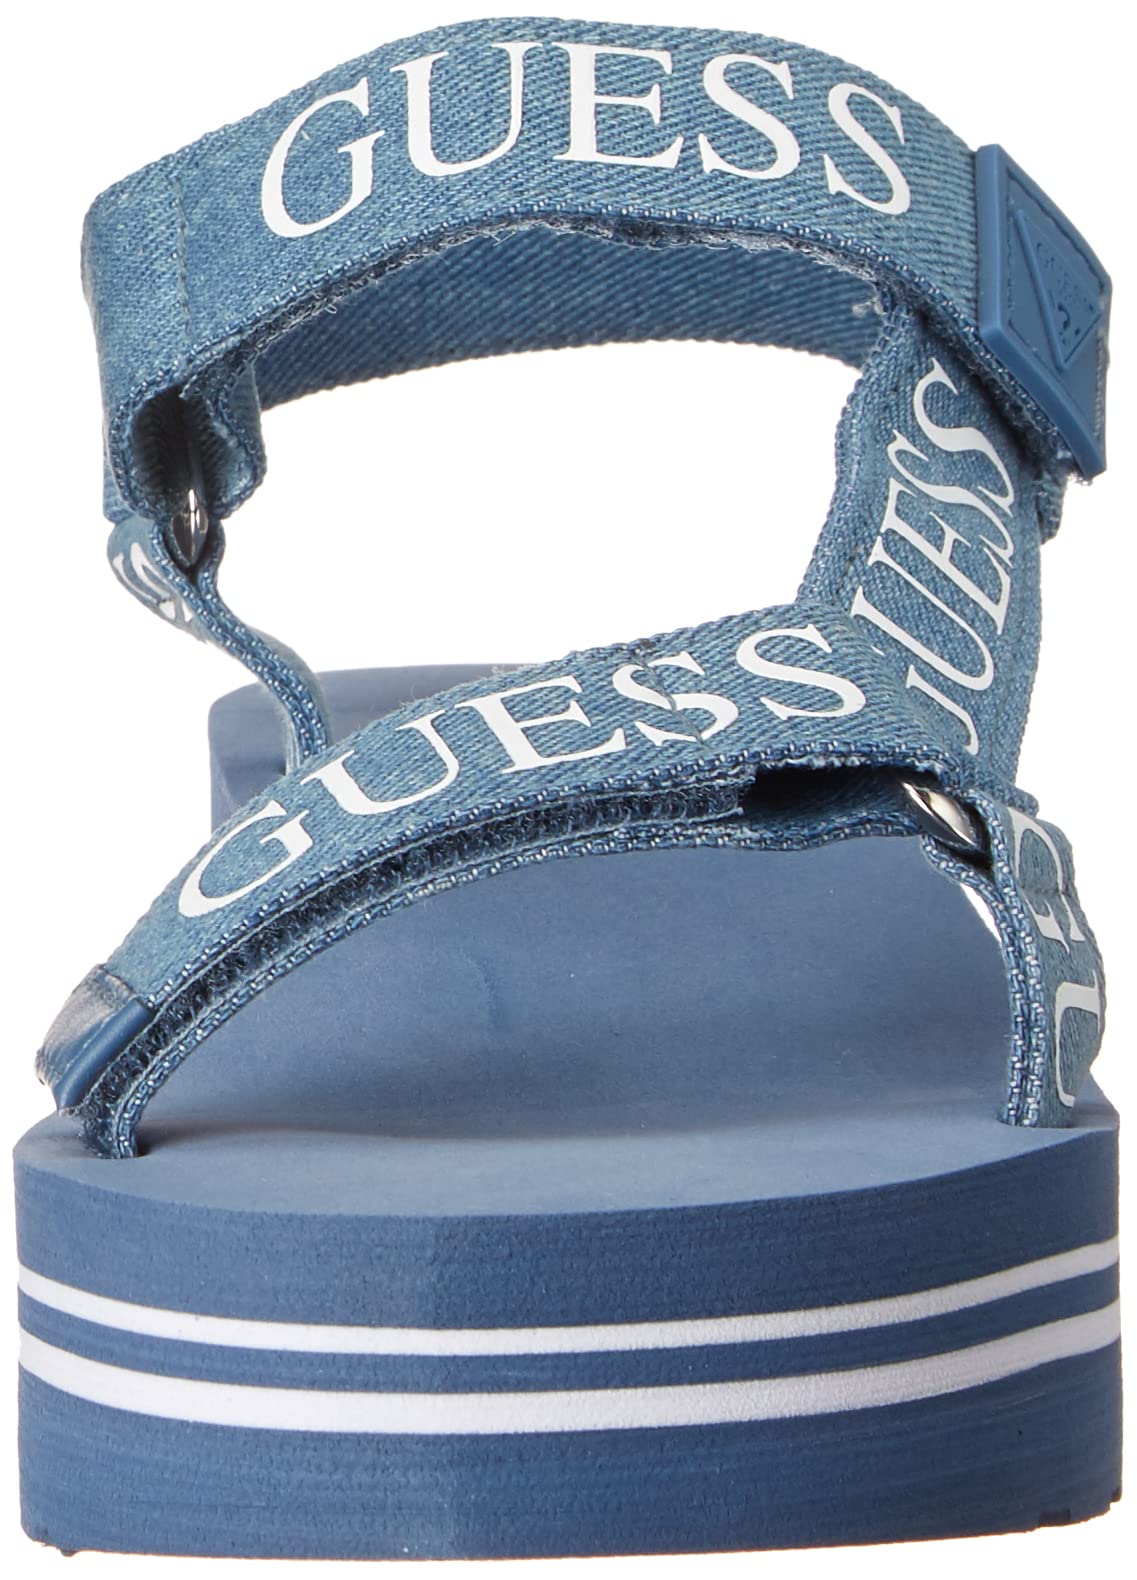 GUESS Women's AVIN Wedge Sandal, Blue+White Denim, 6